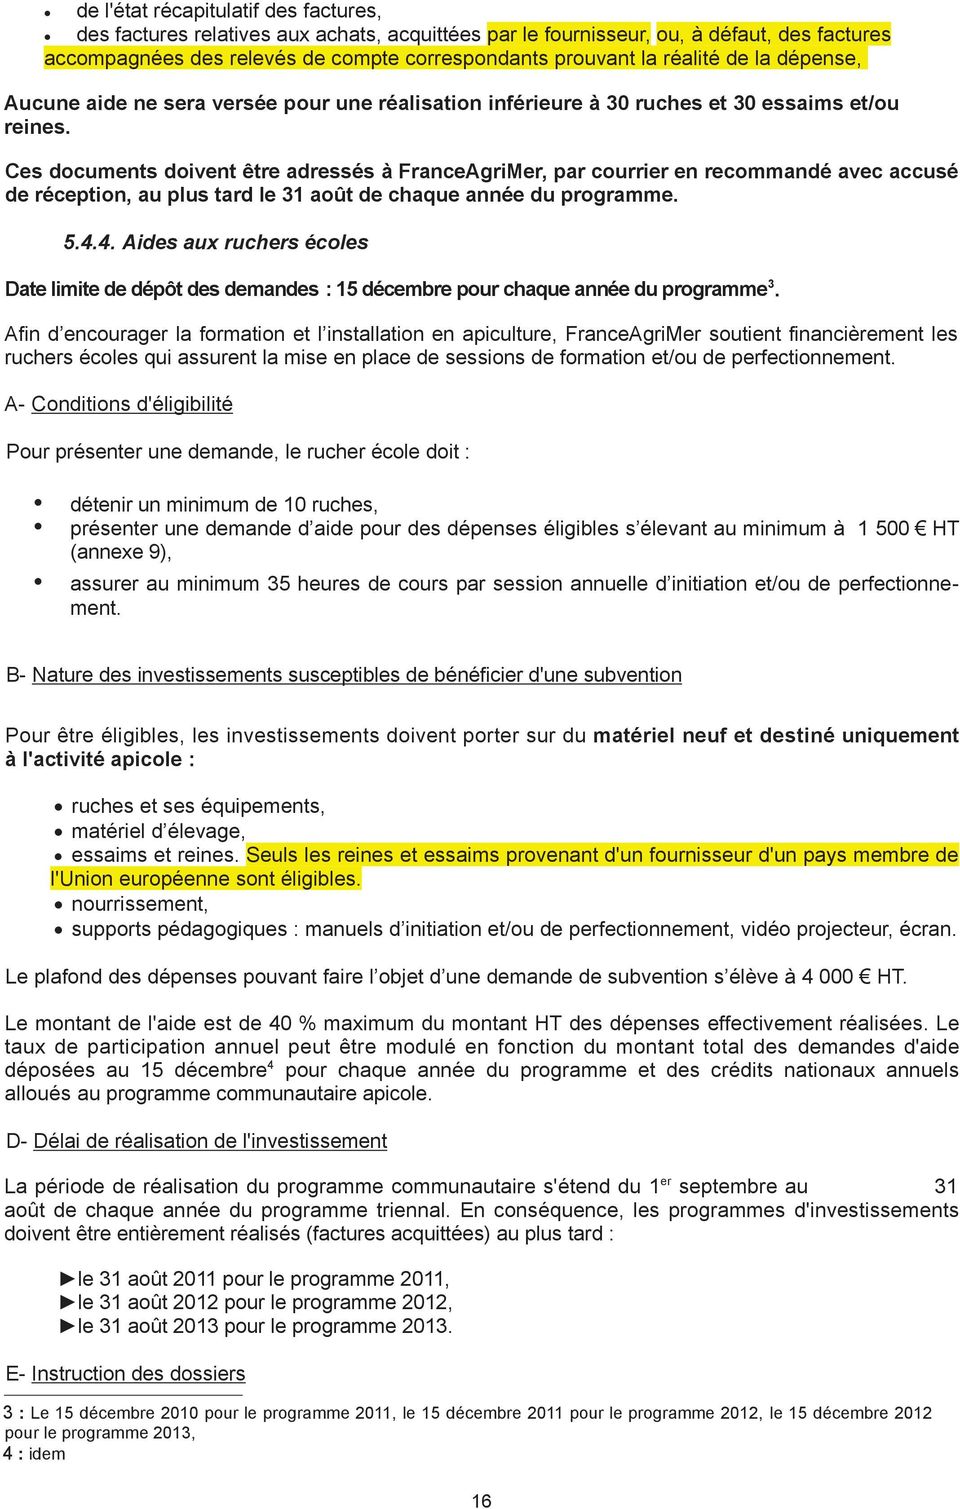 Ces documents doivent être adressés à FranceAgriMer, par courrier en recommandé avec accusé de réception, au plus tard le 31 août de chaque année du programme. 5.4.